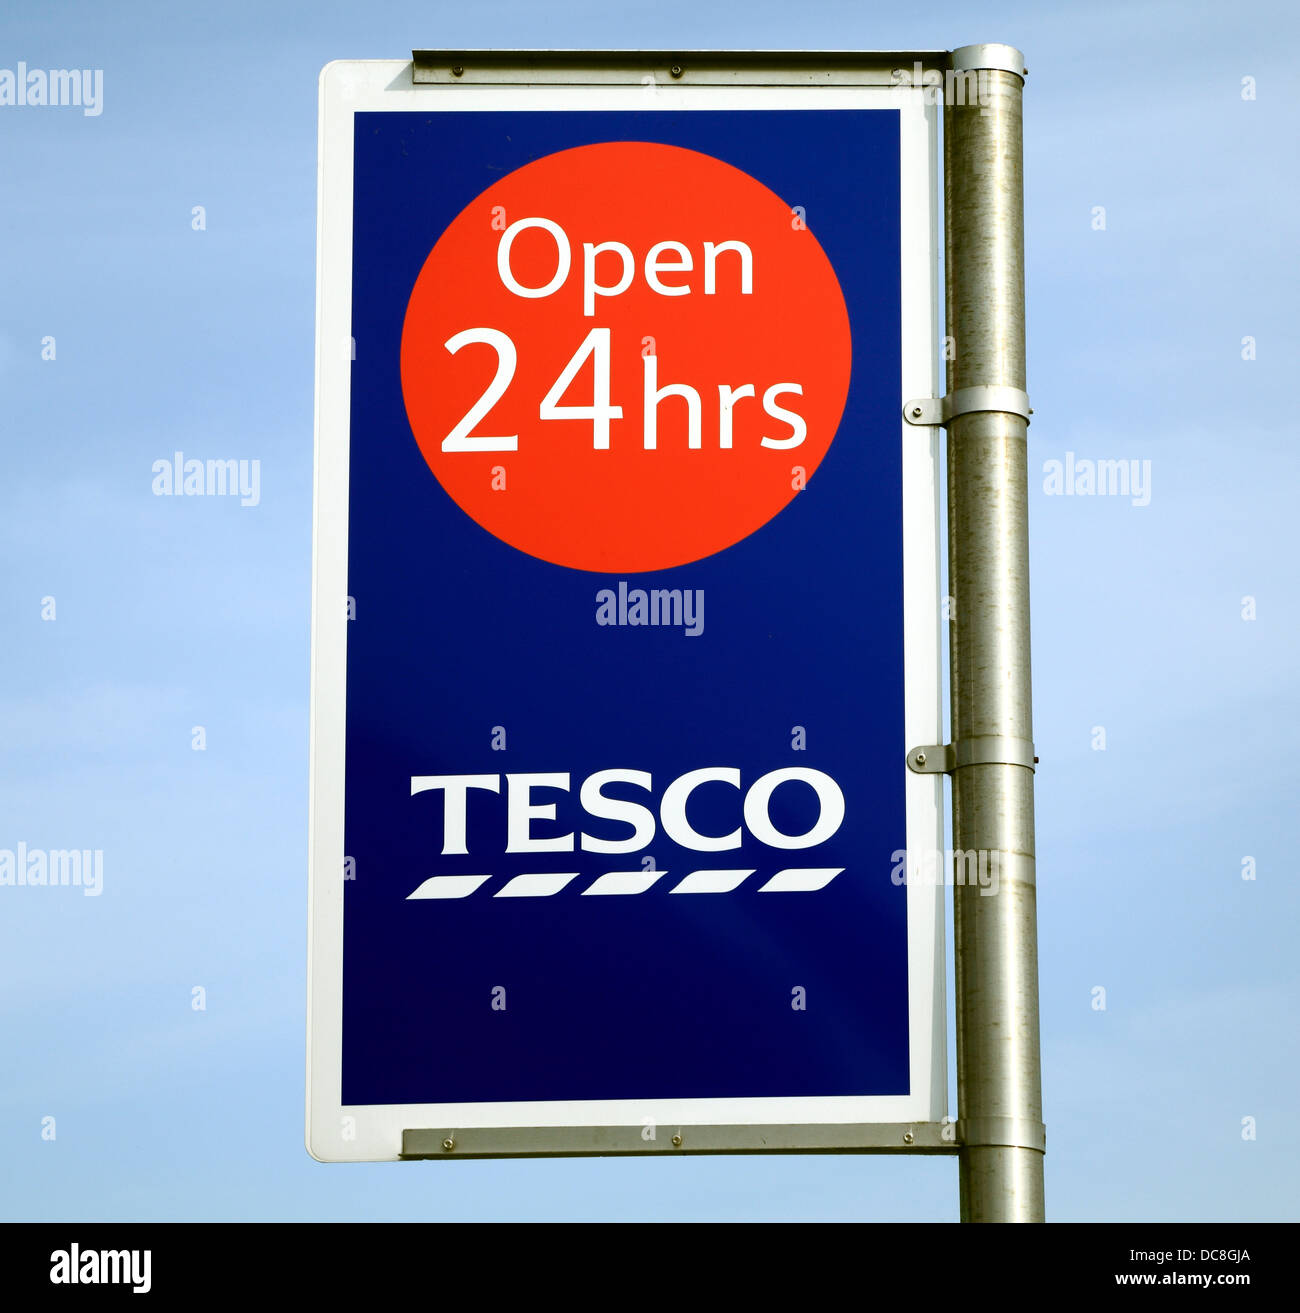 Supermarché Tesco, ouvert 24 heures signe, England UK English supermarchés Banque D'Images